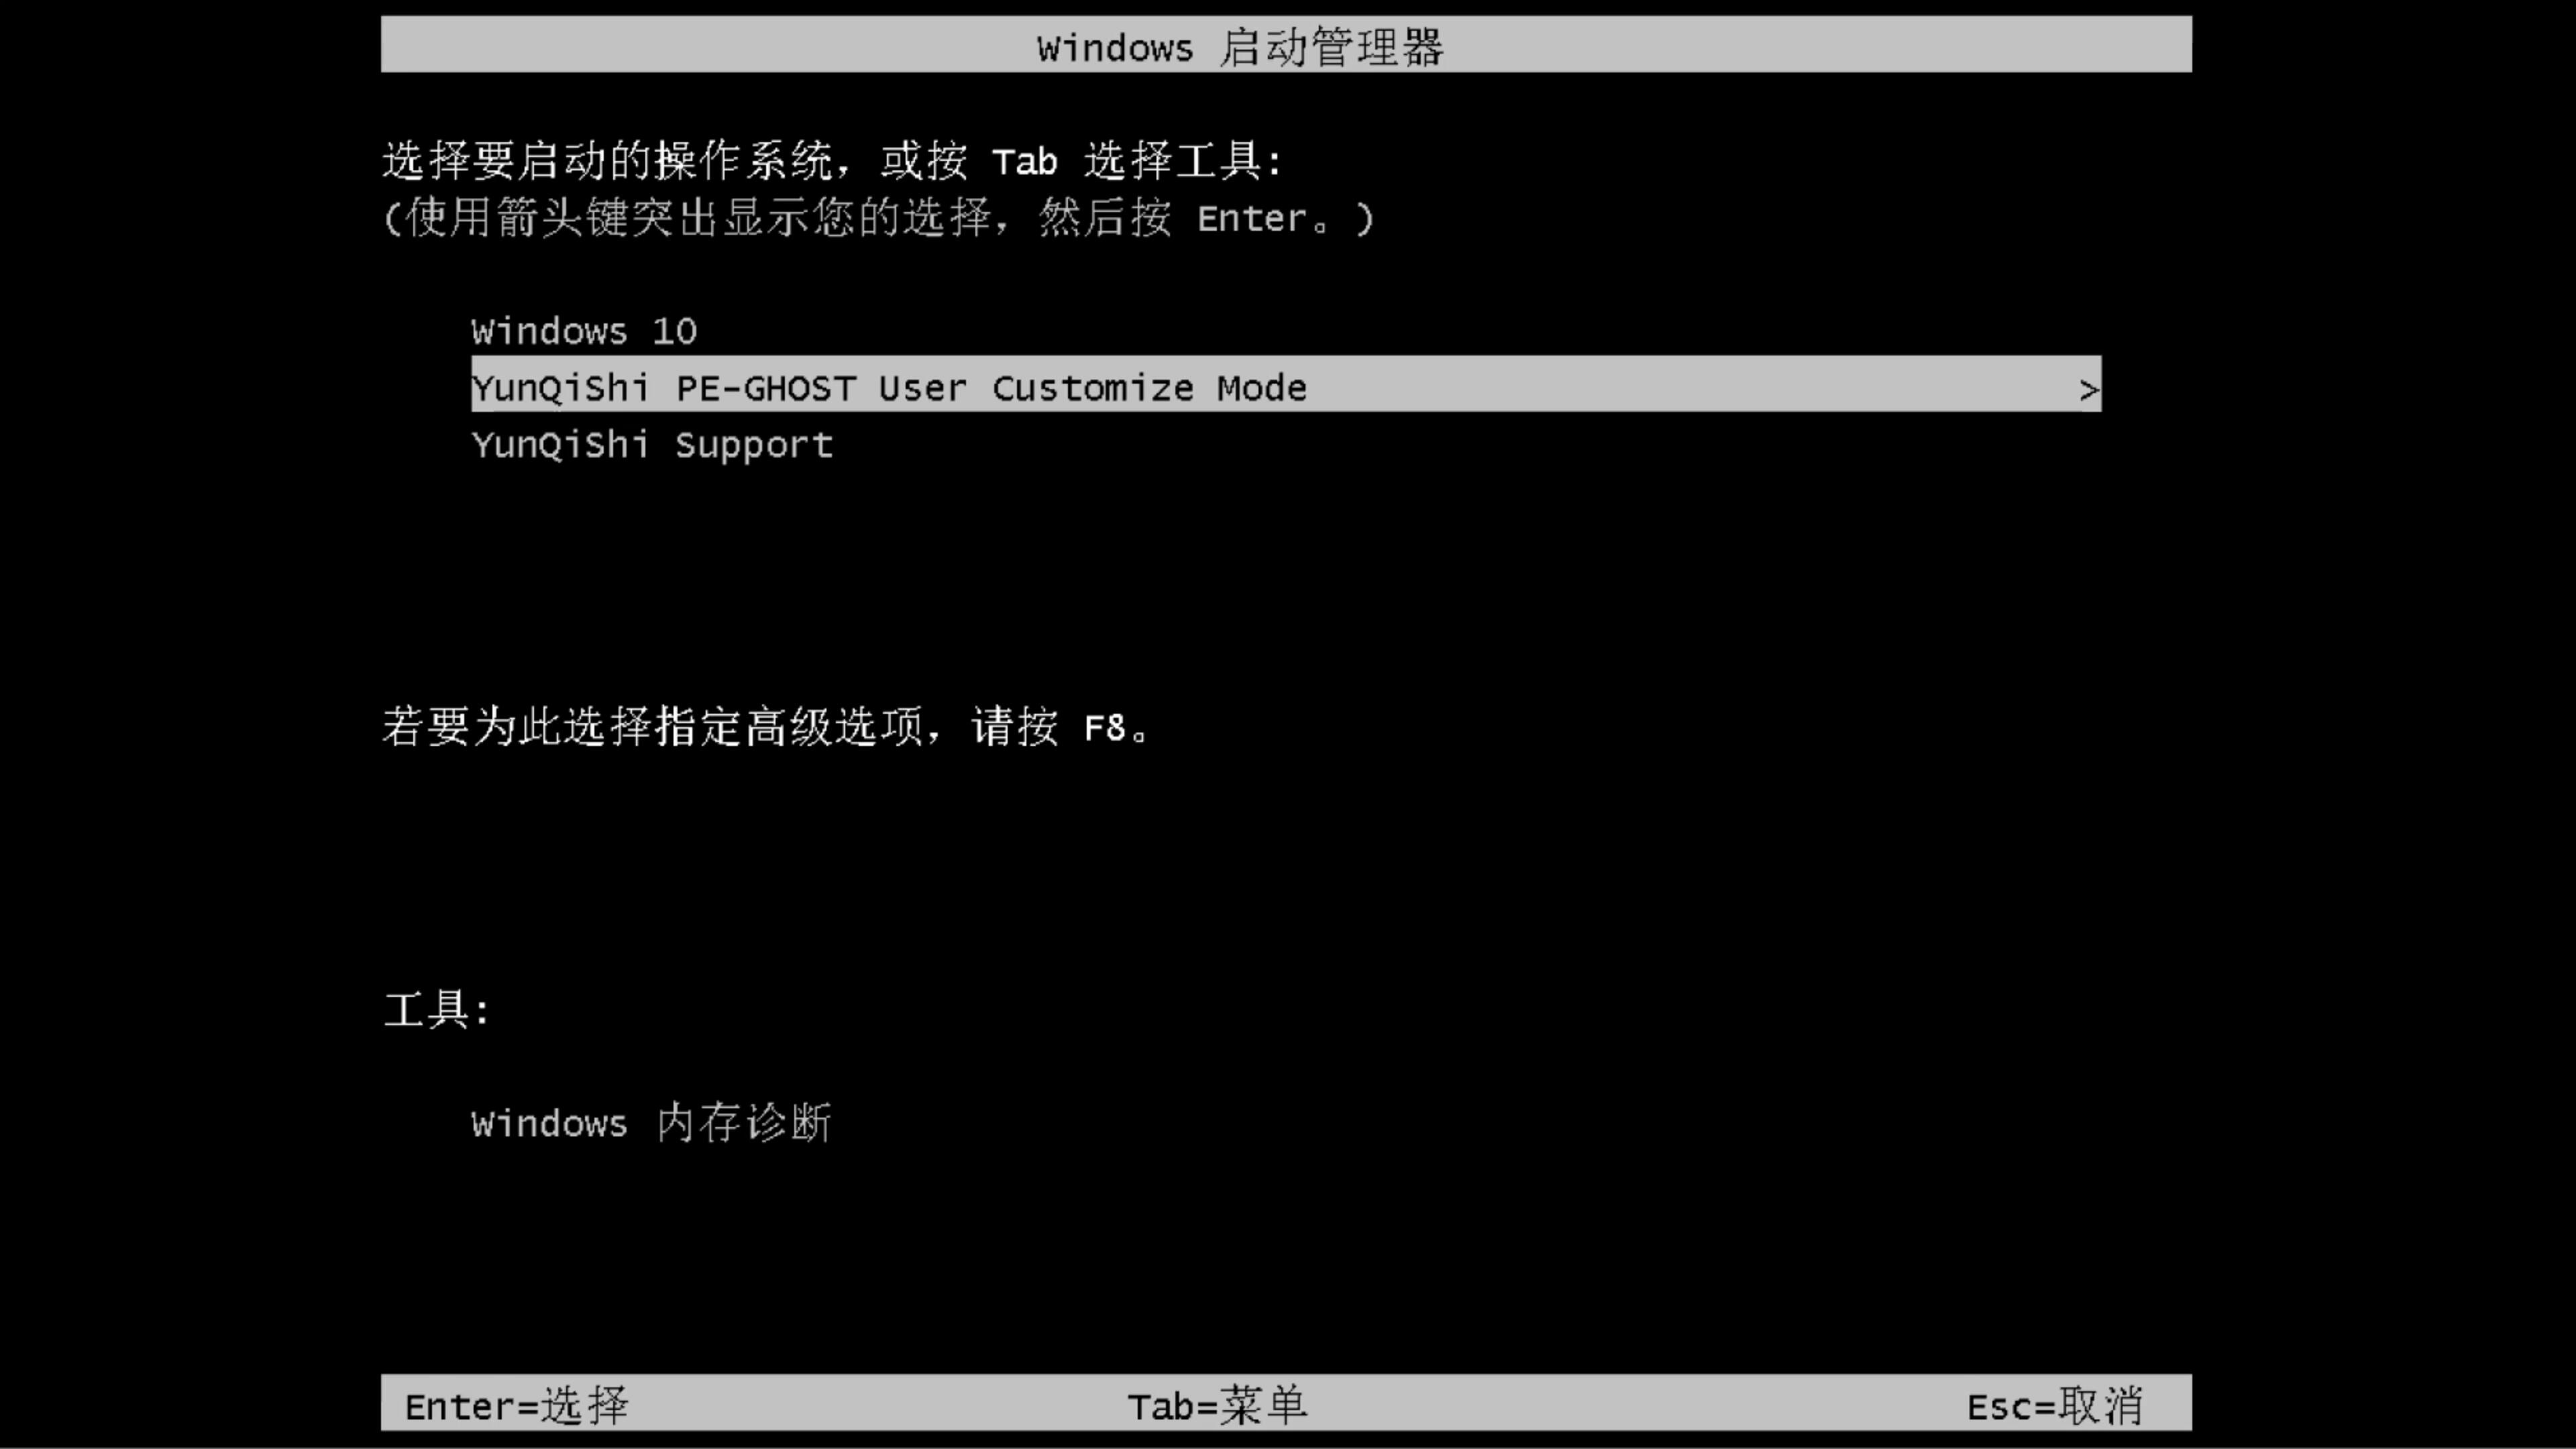 神州笔记本专用系统  windows10 X64  青春装机版 V2021.01(9)